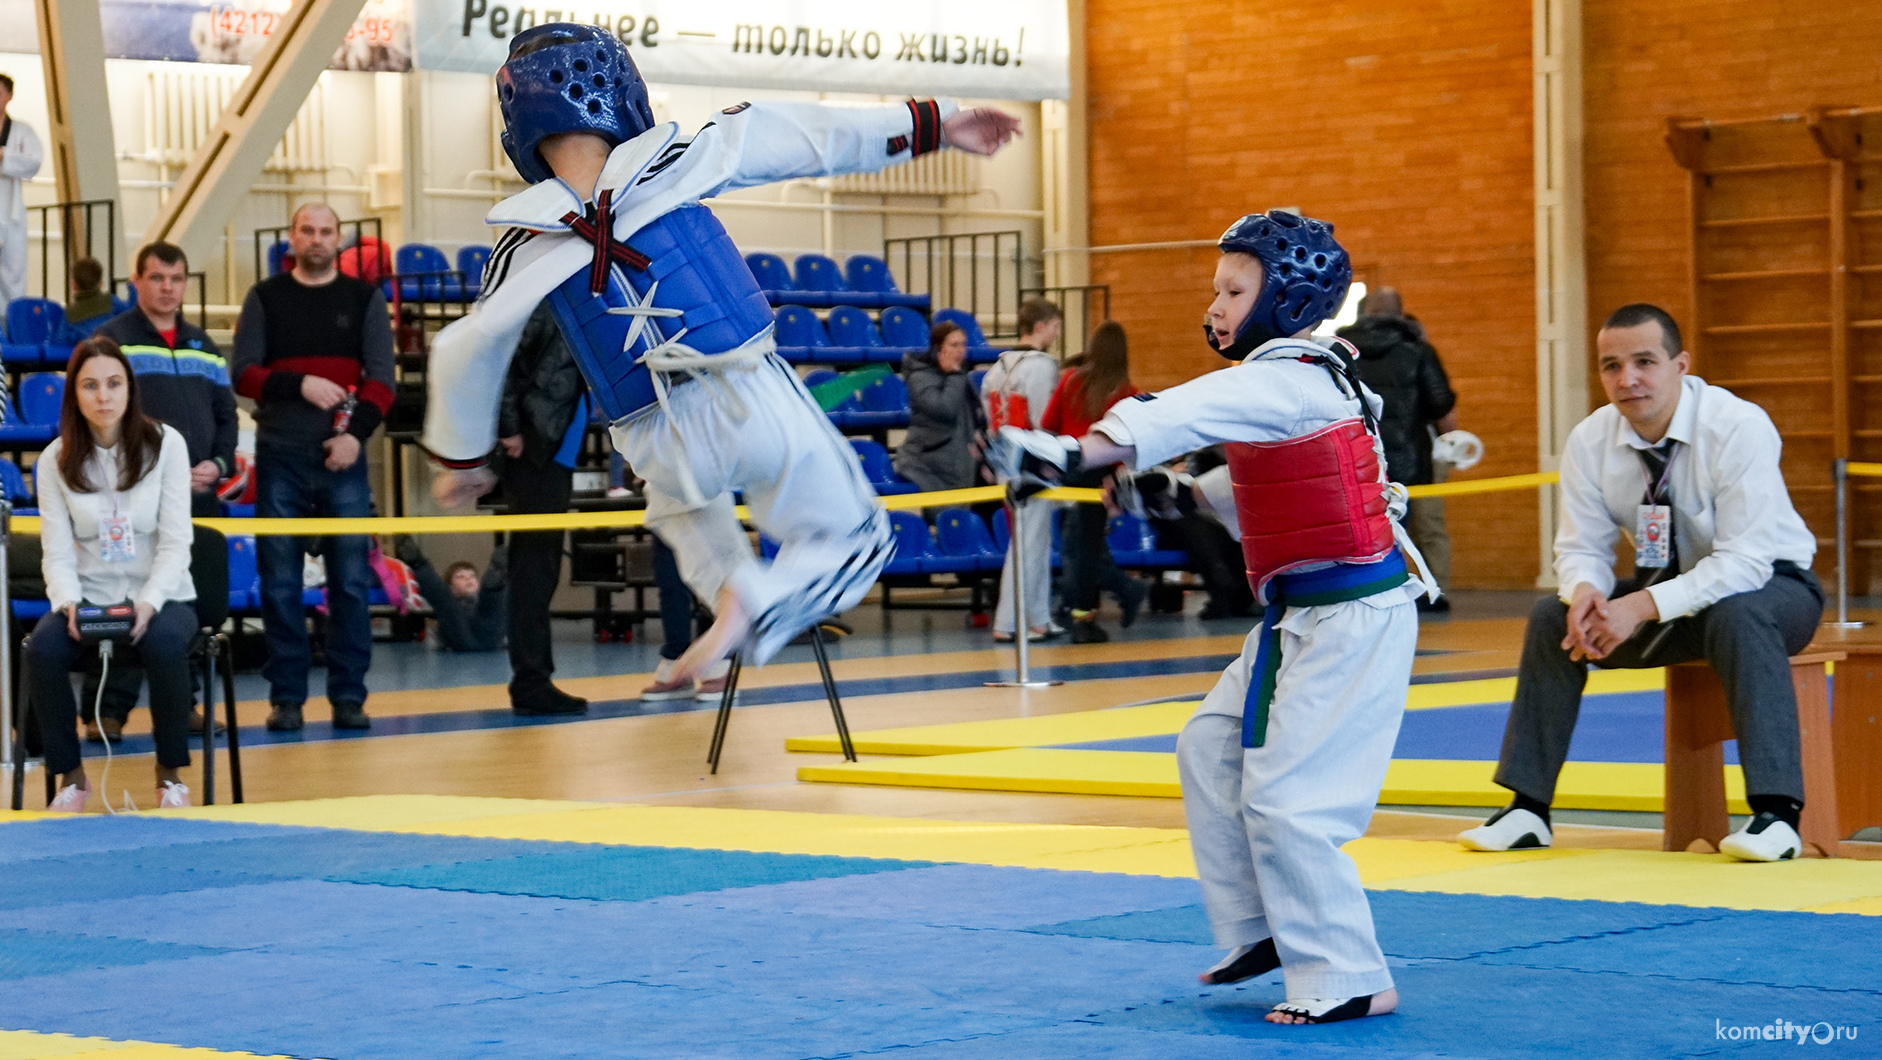 Около 50-ти спортсменов по итогам Юношеских игр боевых искусств отобрались для участия в Дальневосточных играх